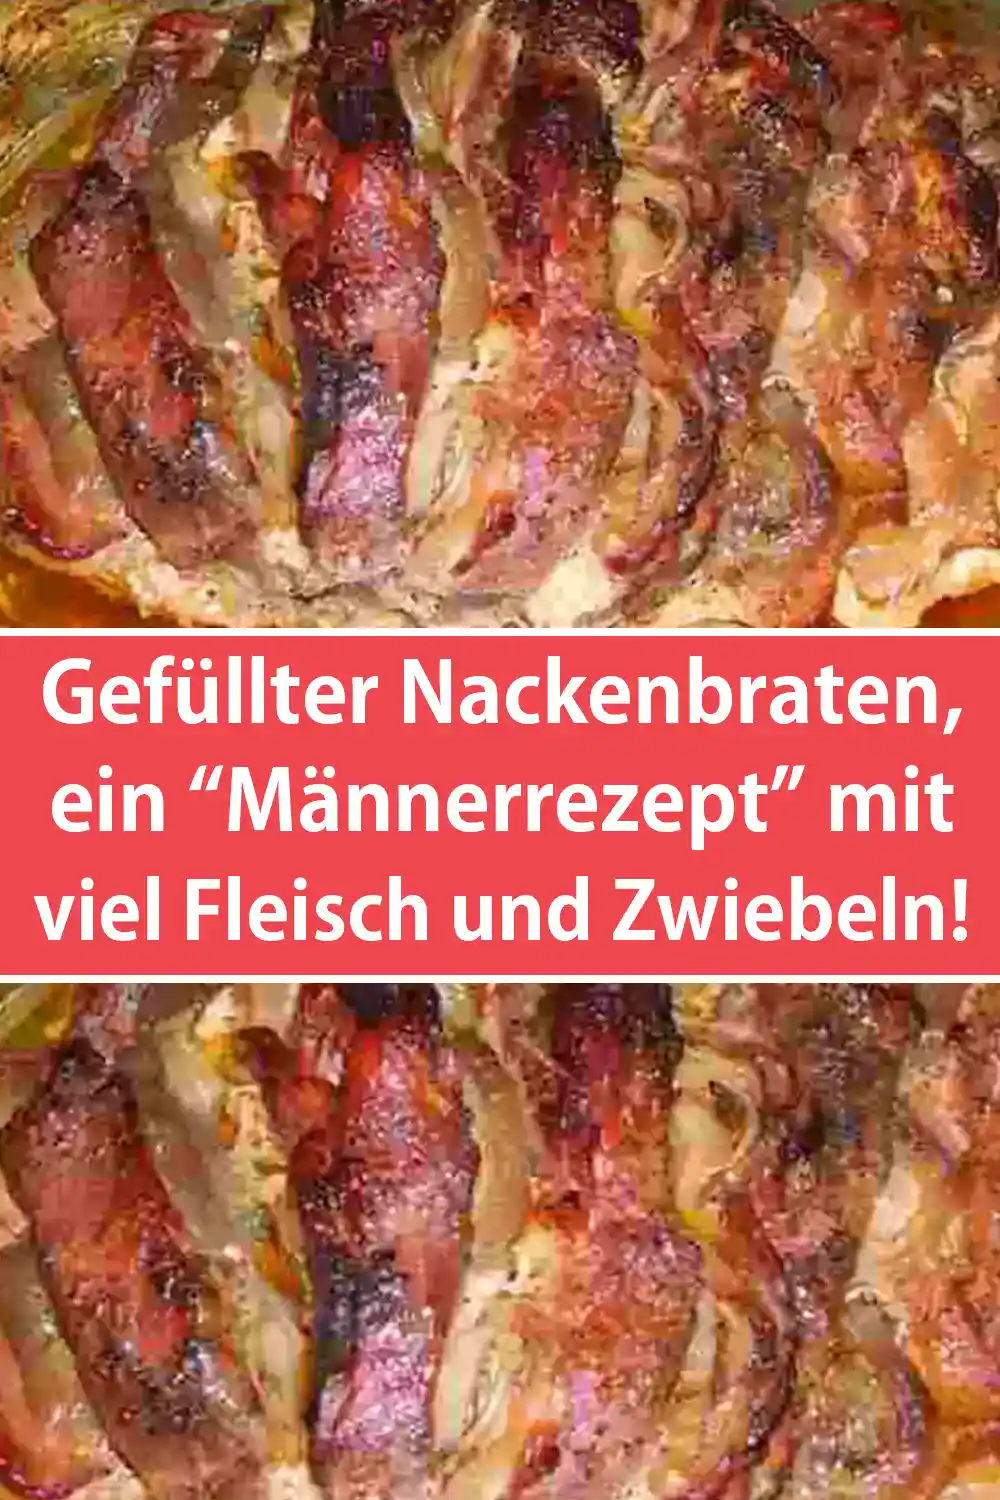 Gefüllter Nackenbraten Rezept, ein “Männerrezept” mit viel Fleisch und Zwiebeln!